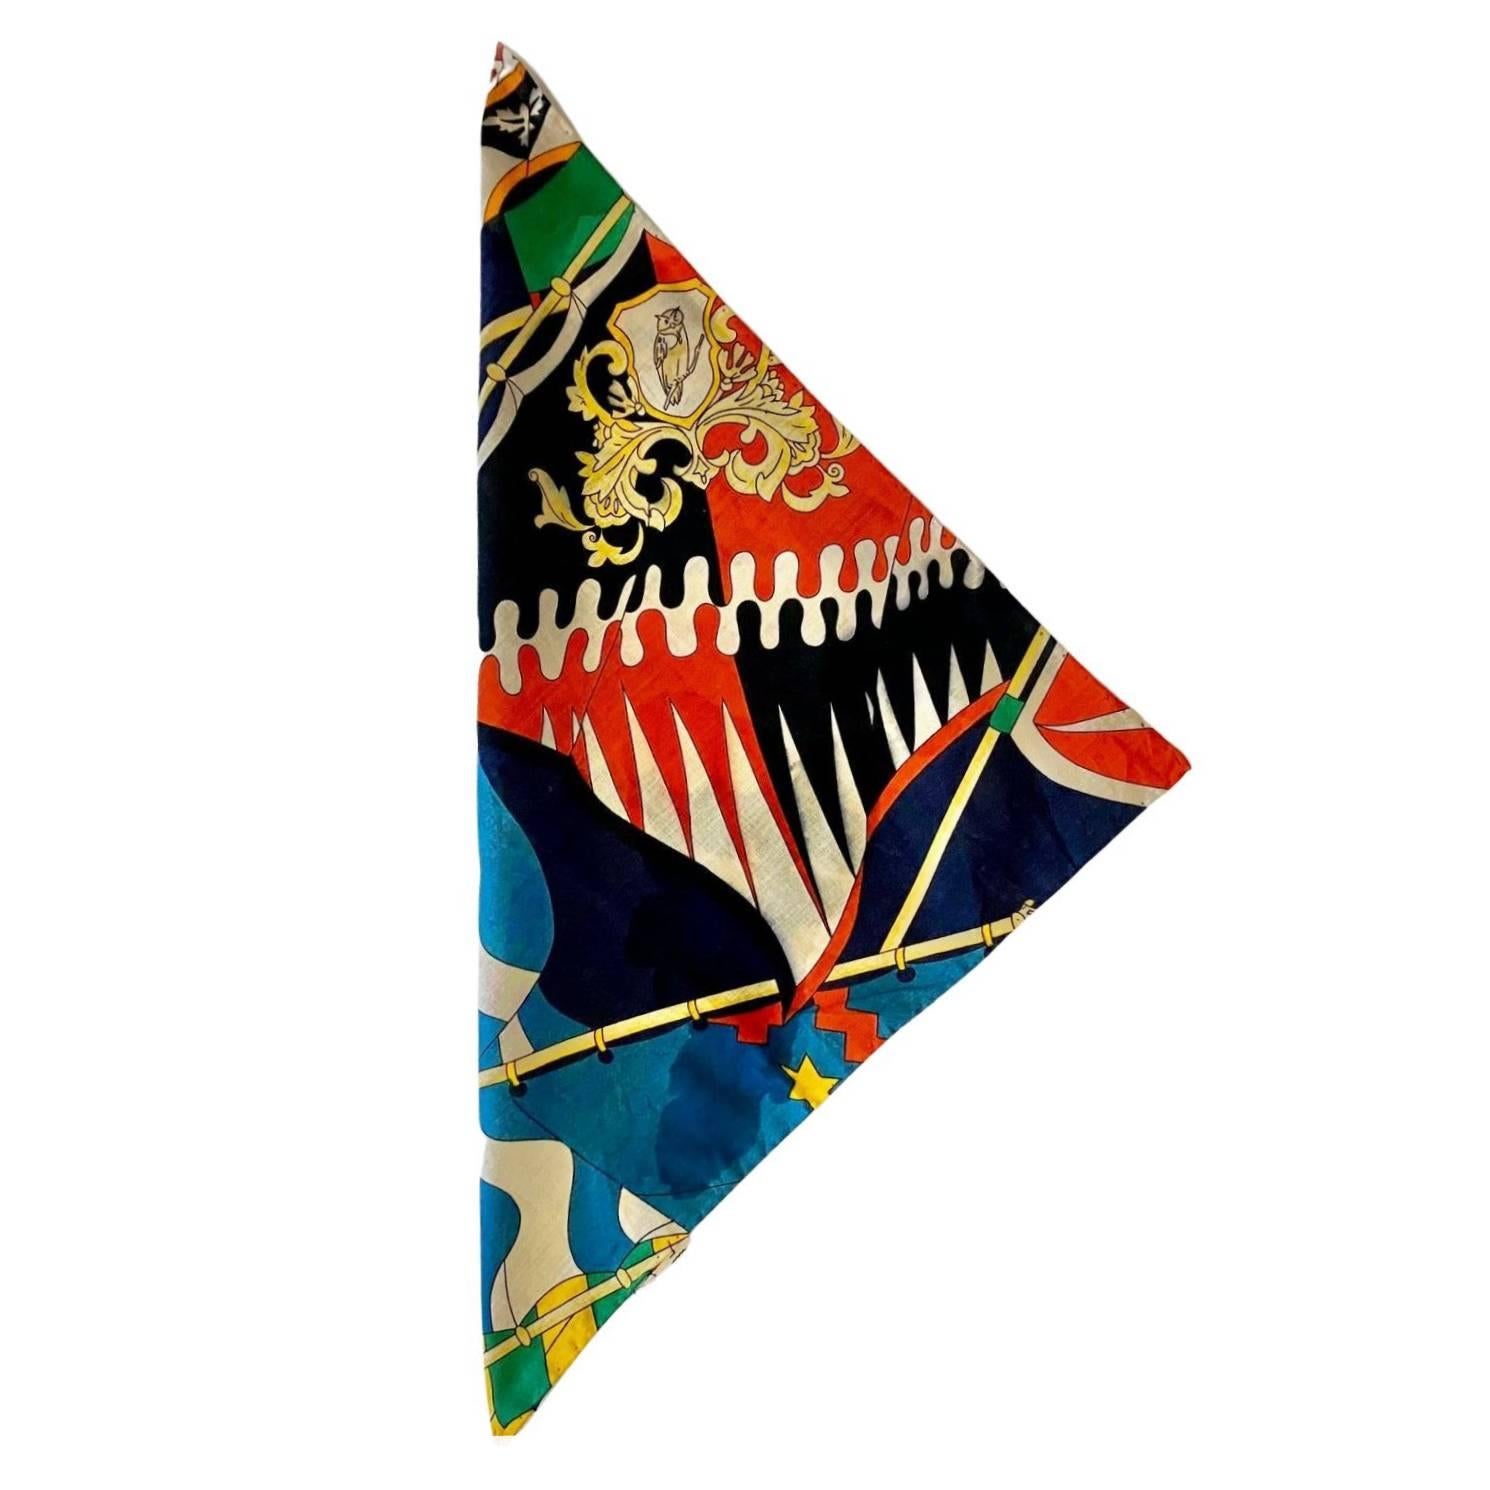 Ce mouchoir en coton imprimé d'emblèmes militaires de Gucci du début des années 1980 est une pièce rare et très recherchée, sous la forme d'un carré aux multiples couleurs.

Condit : début des années 1980, Vintage, usure minimale, conforme à l'âge